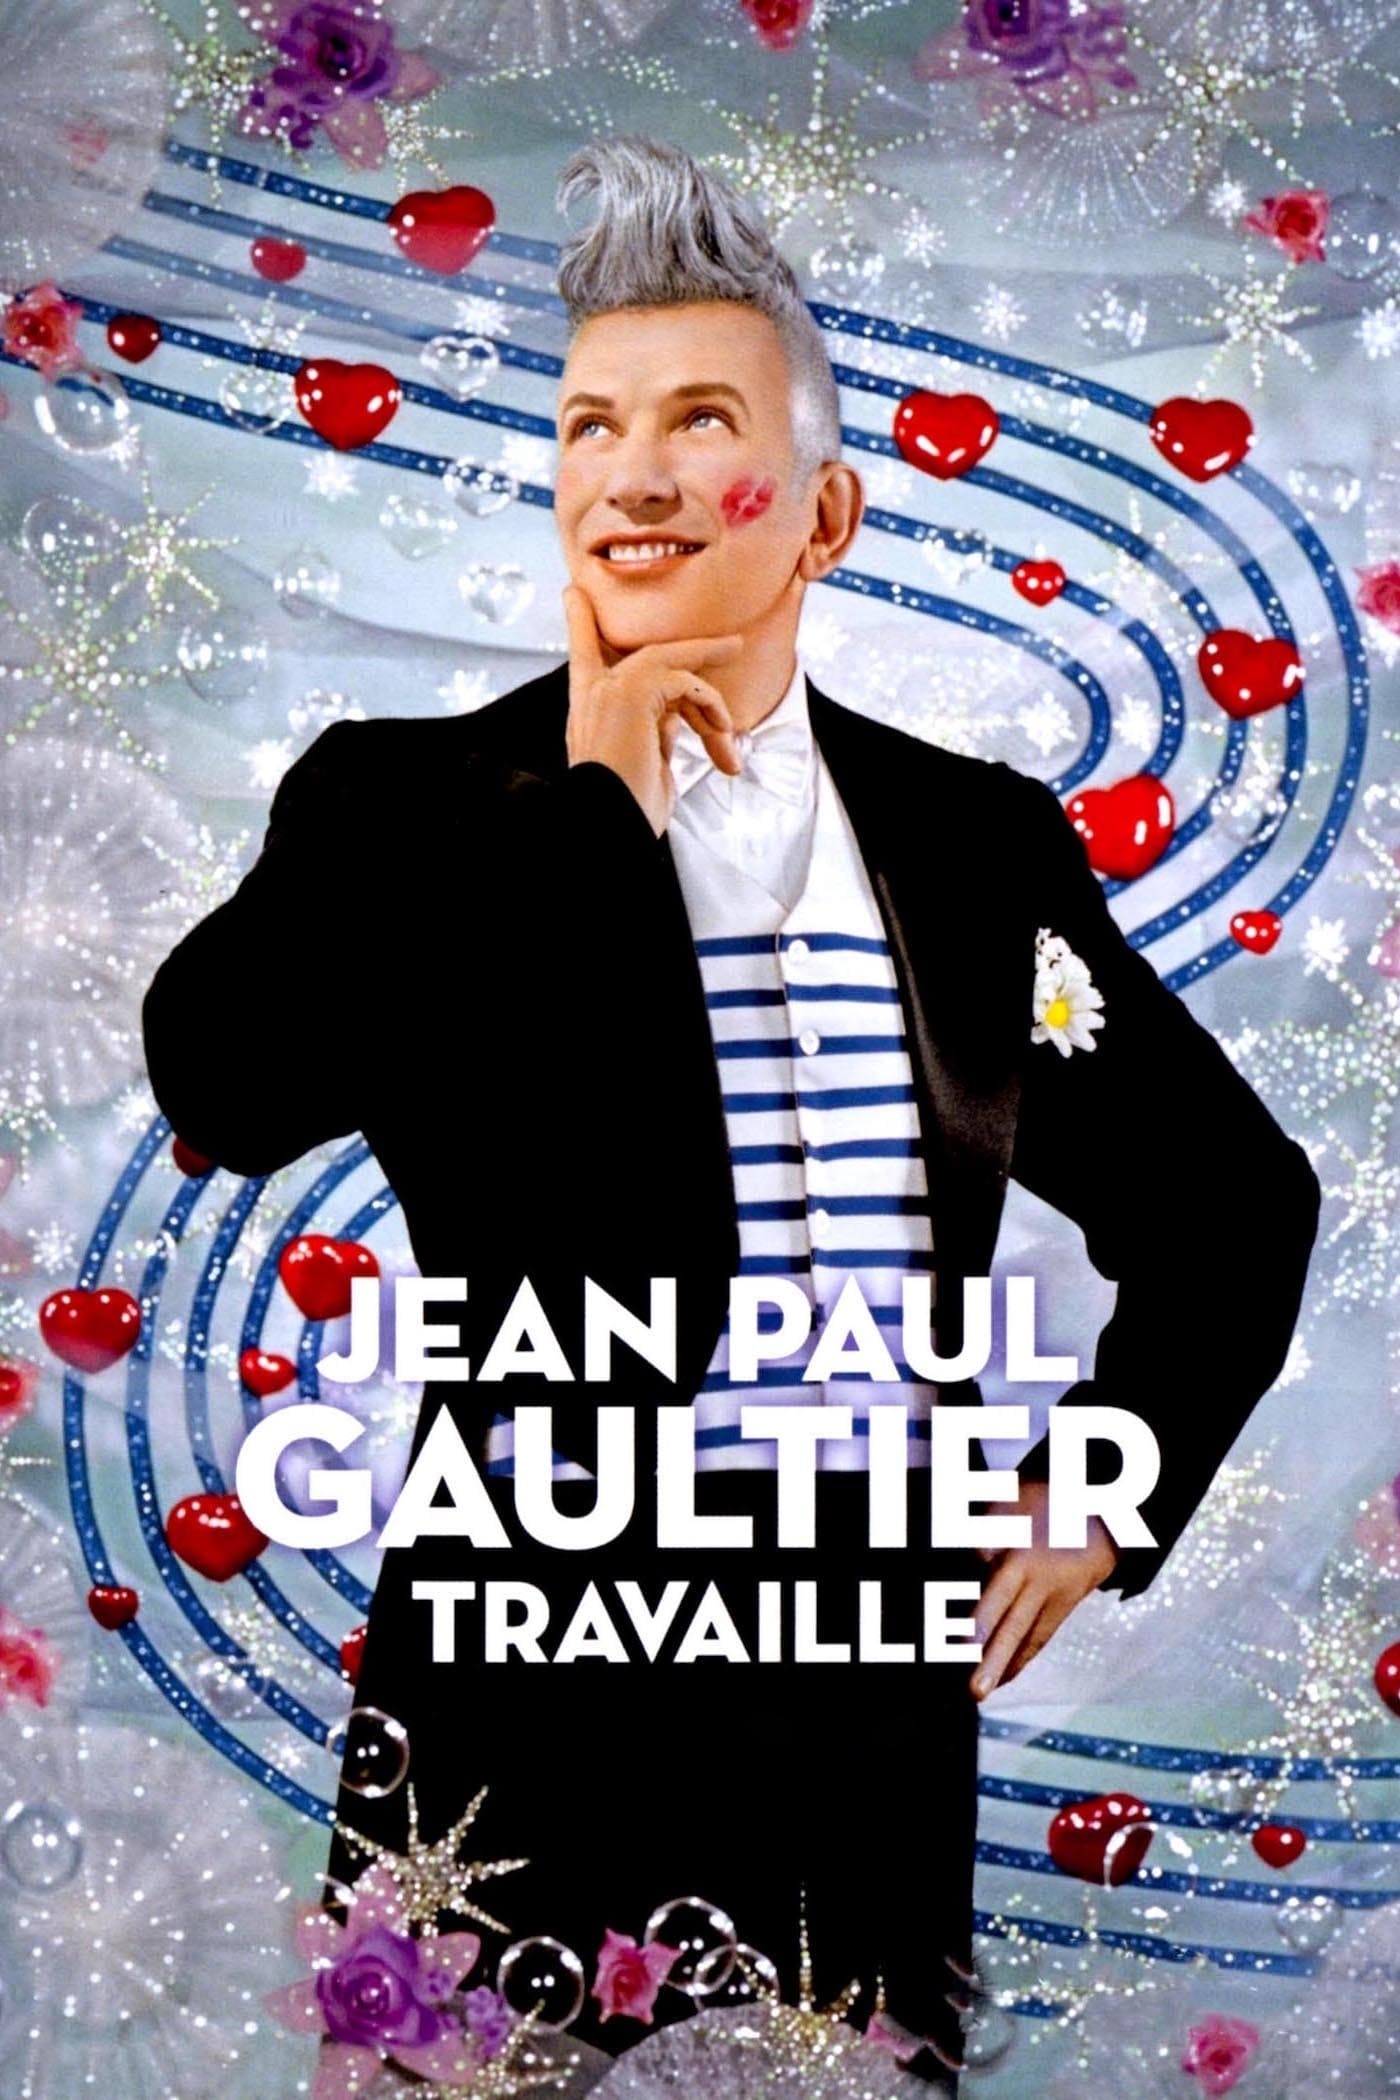 Caratula de Jean-Paul Gaultier travaille (Jean Paul Gaultier en el trabajo) 